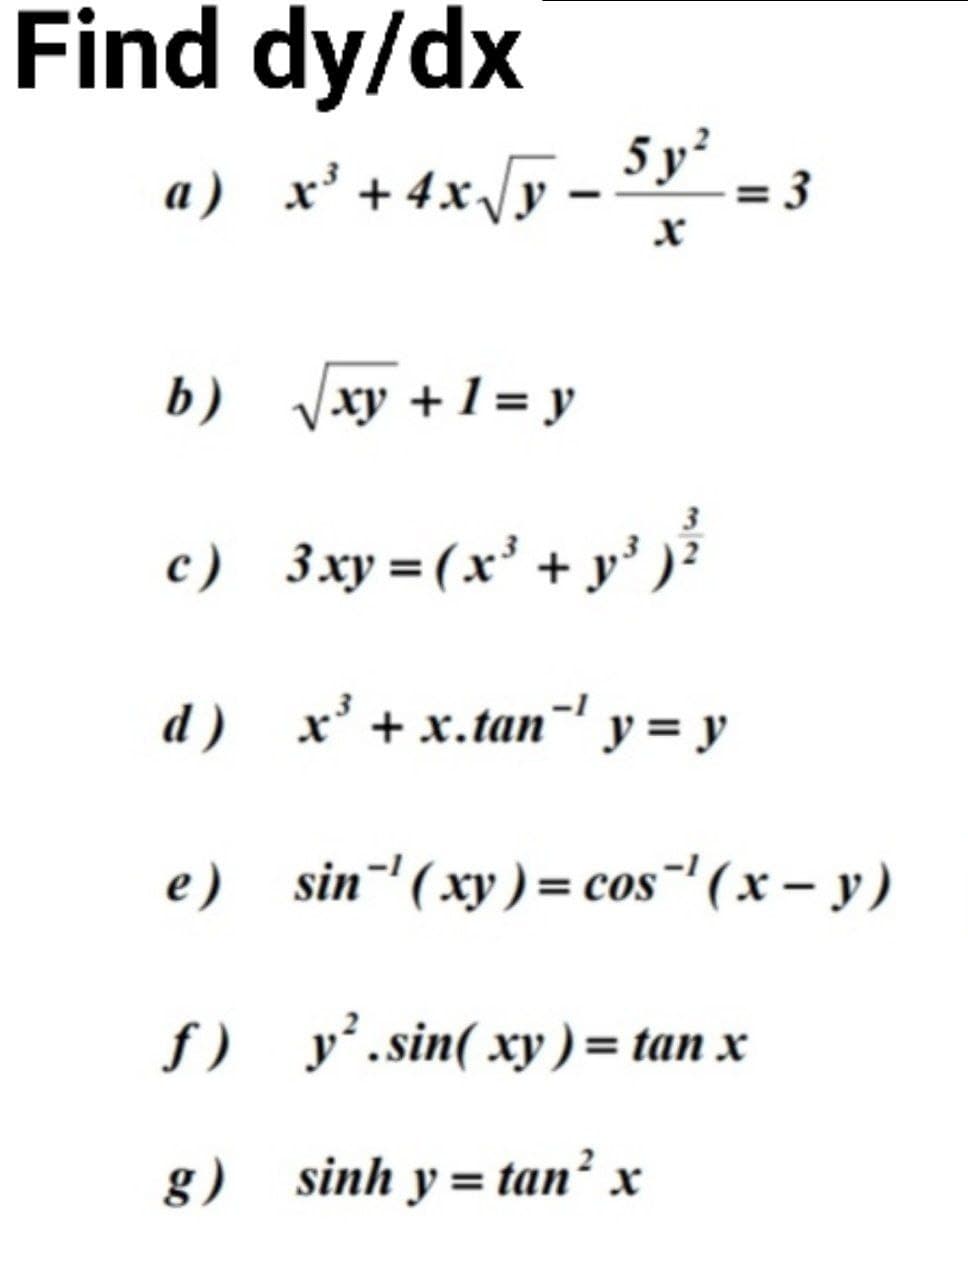 Find dy/dx
a) x' +4x/y - 5y° - 3
b) xy +1 = y
3
c) 3xy =(x' + y')
d) х* +х.tan" у %3D у
e) sin¯'(xy) = cos"' ( x – y)
f) y’.sin( xy ) = tan x
g) sinh y= tan² x
